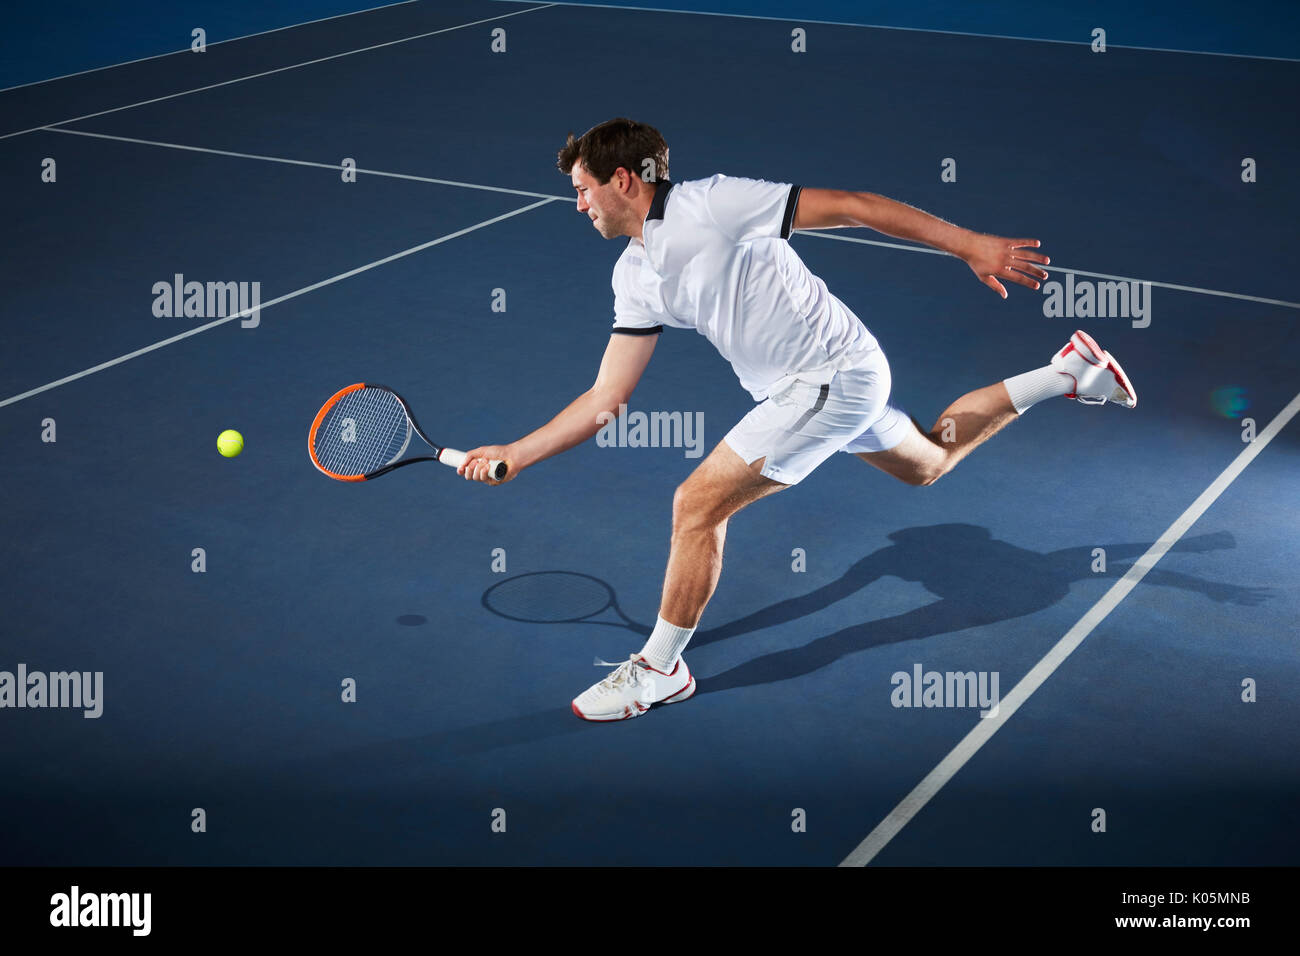 Joueur de tennis jouer au tennis, pour atteindre avec raquette de tennis sur le court de tennis Banque D'Images